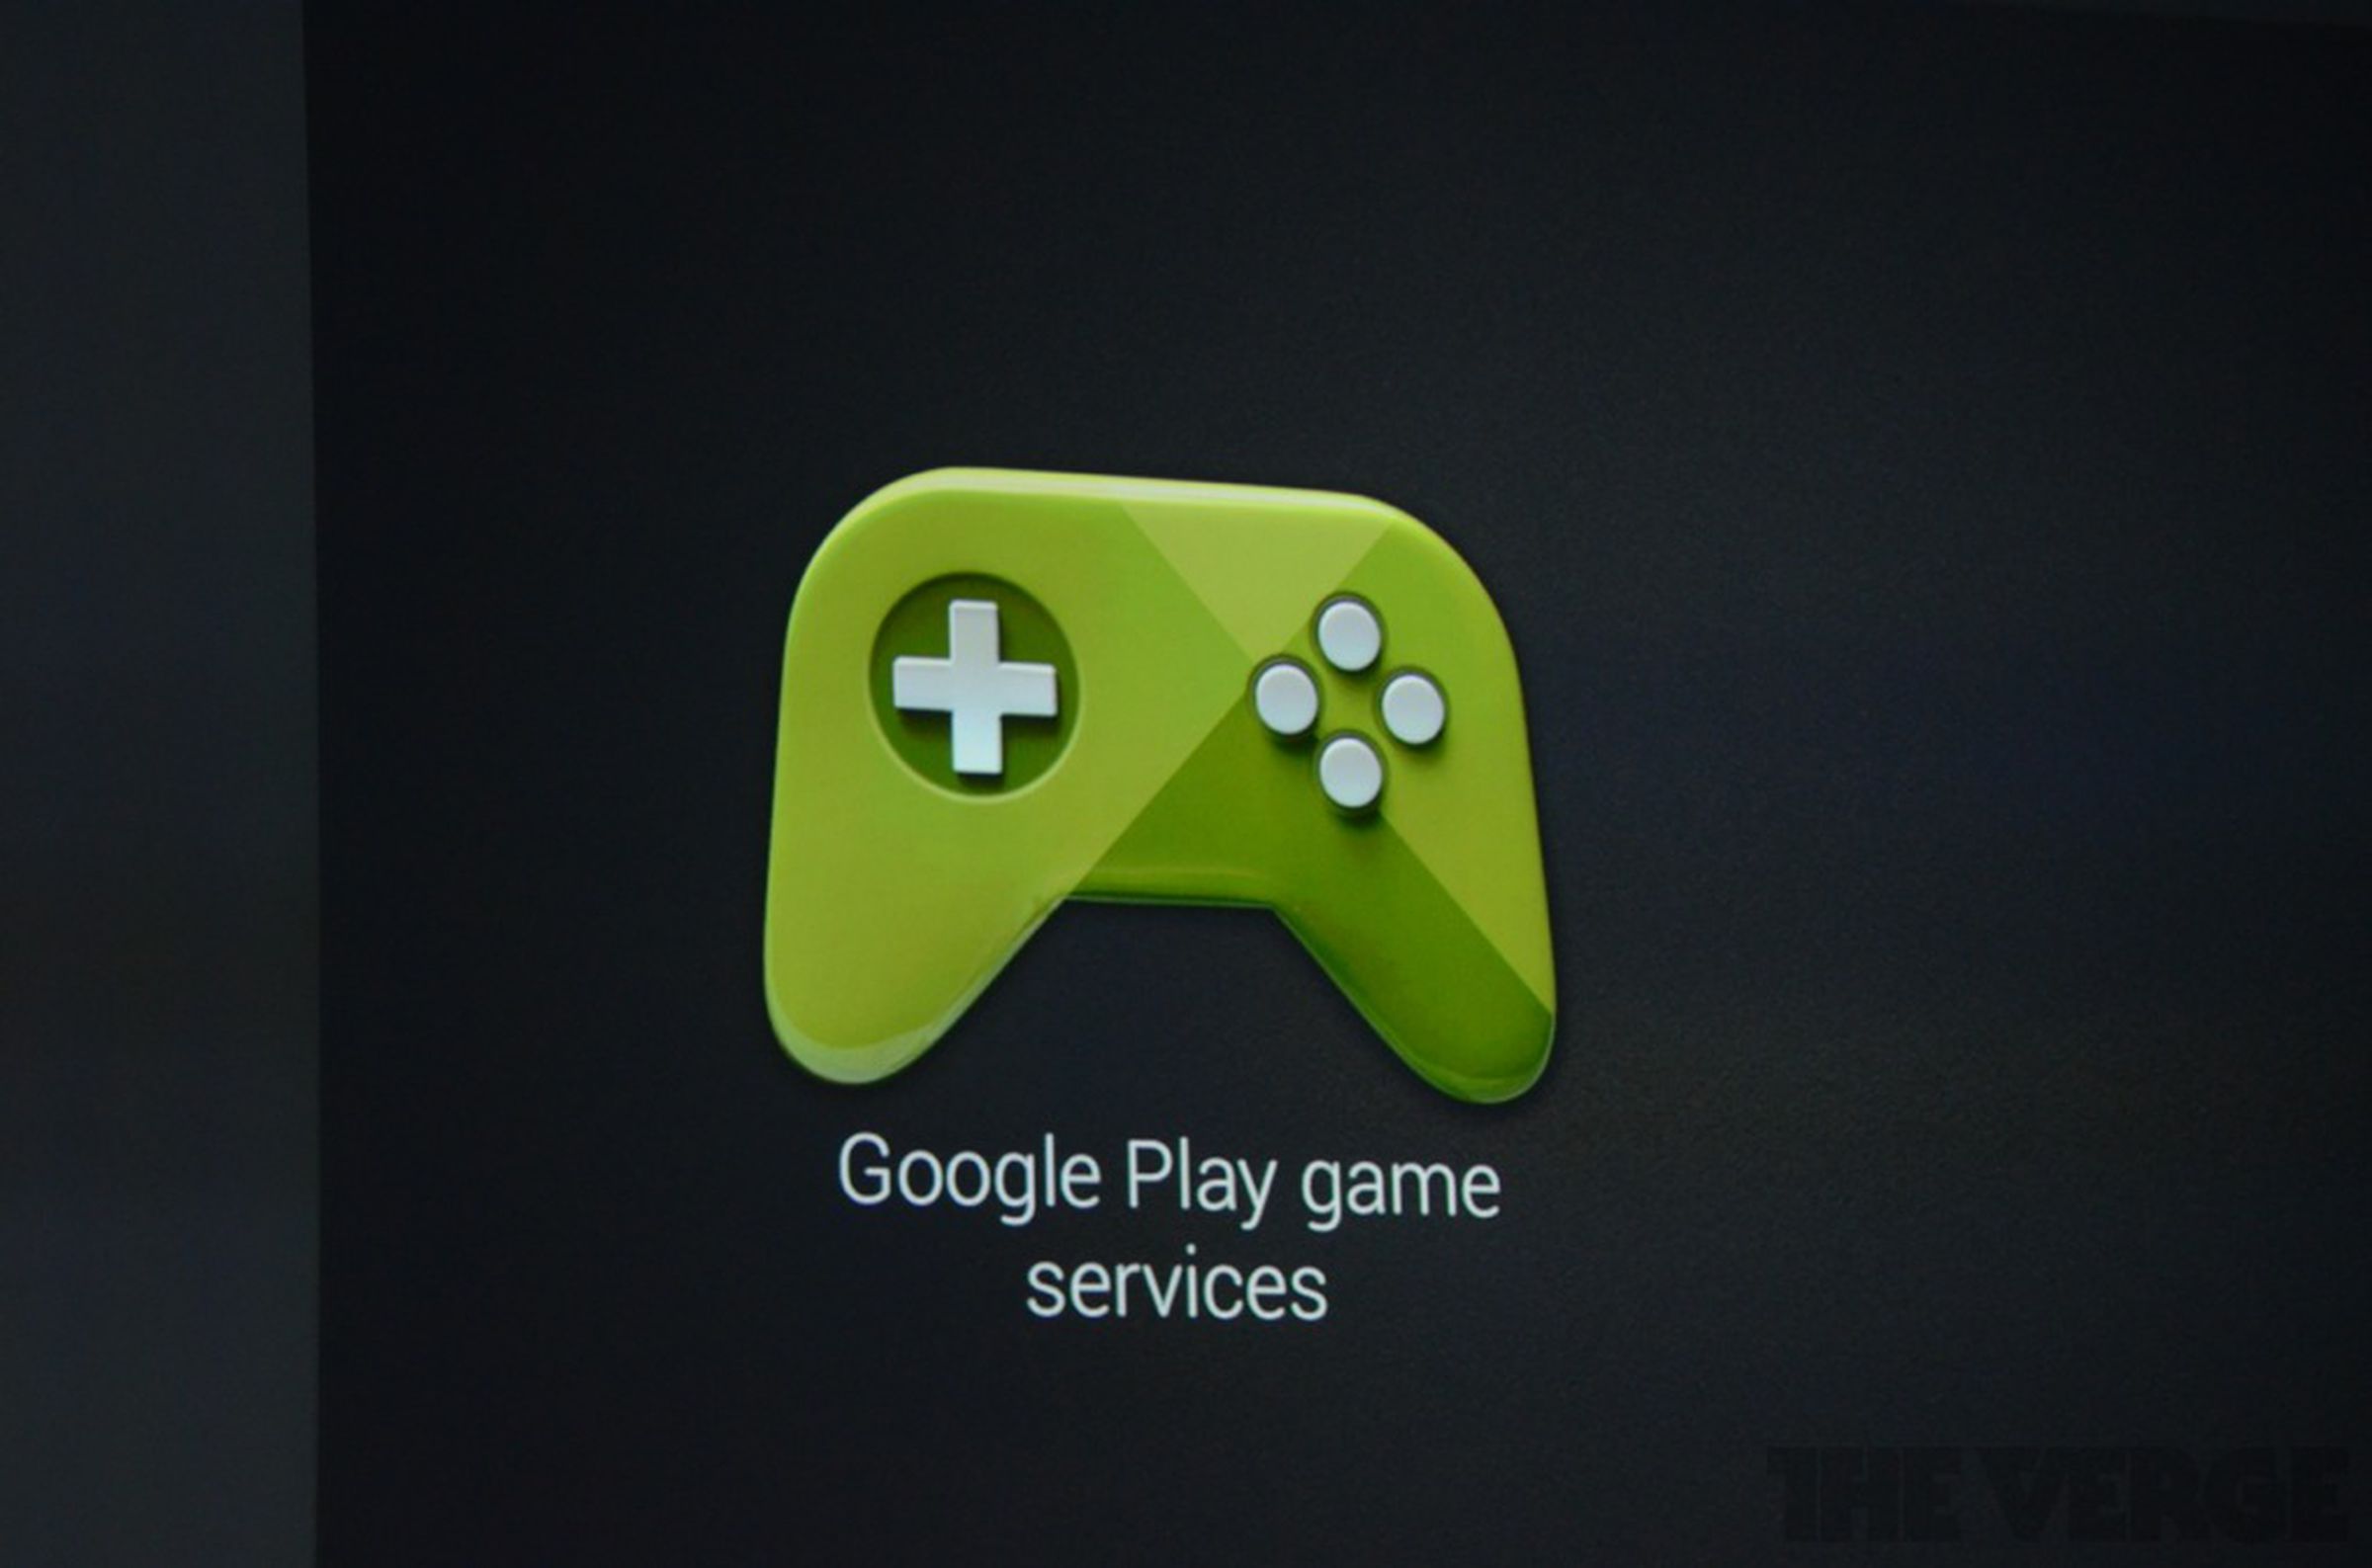 Google Play game services photos